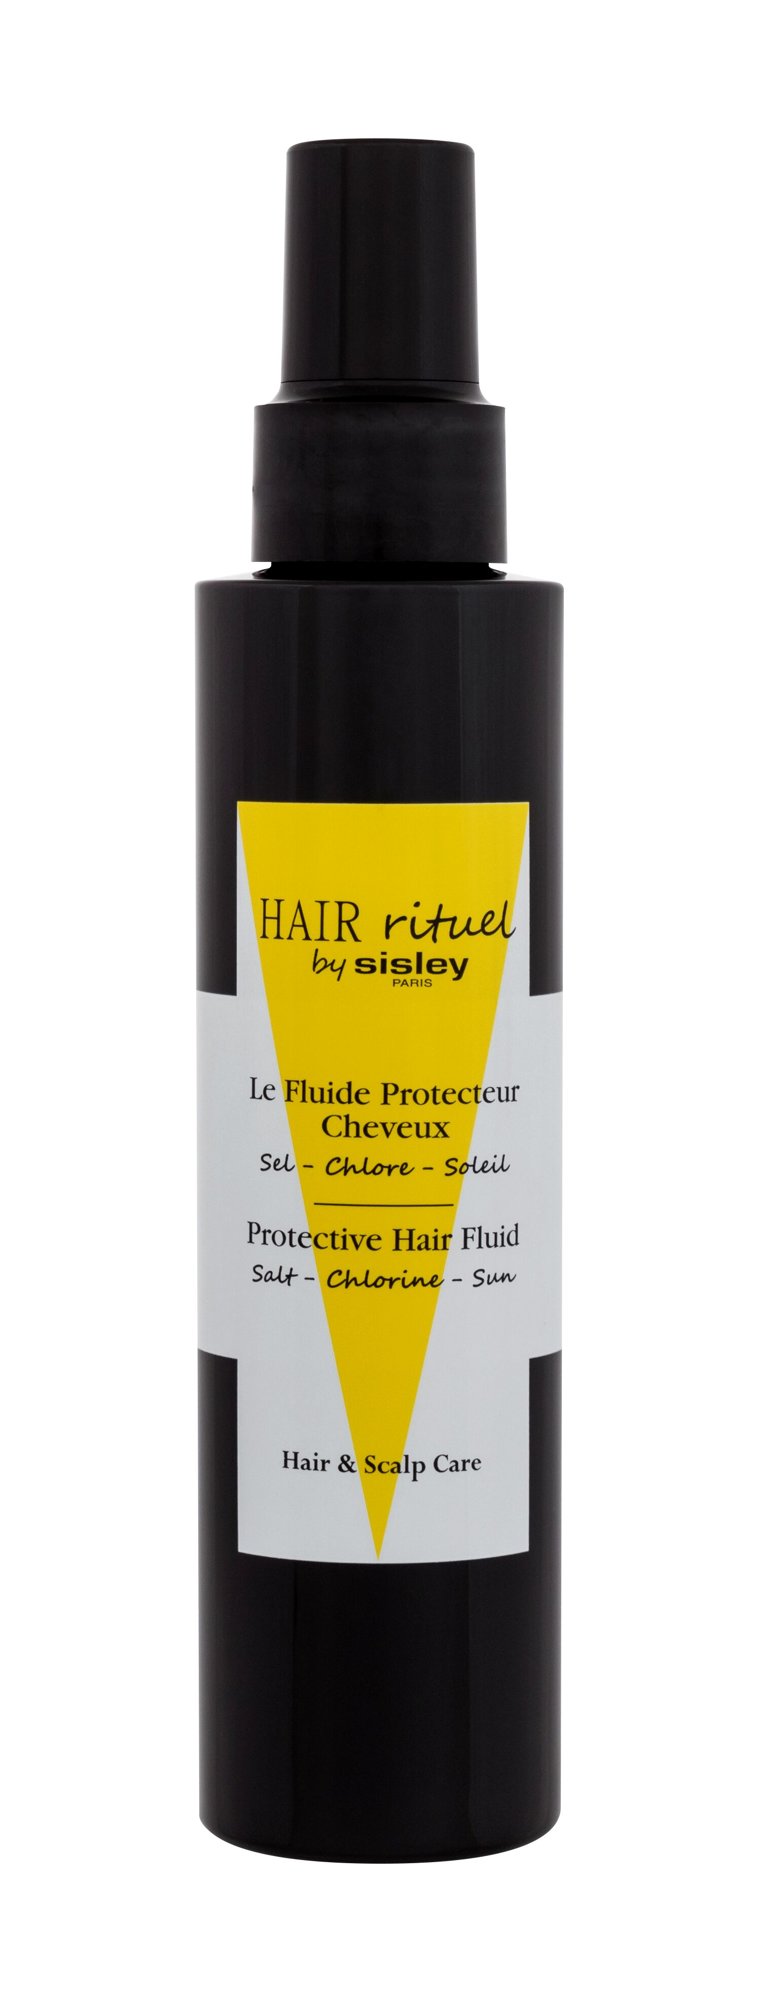 Sisley Hair Rituel Protective Hair Fluid 150ml NIŠINIAI paliekama priemonė plaukams